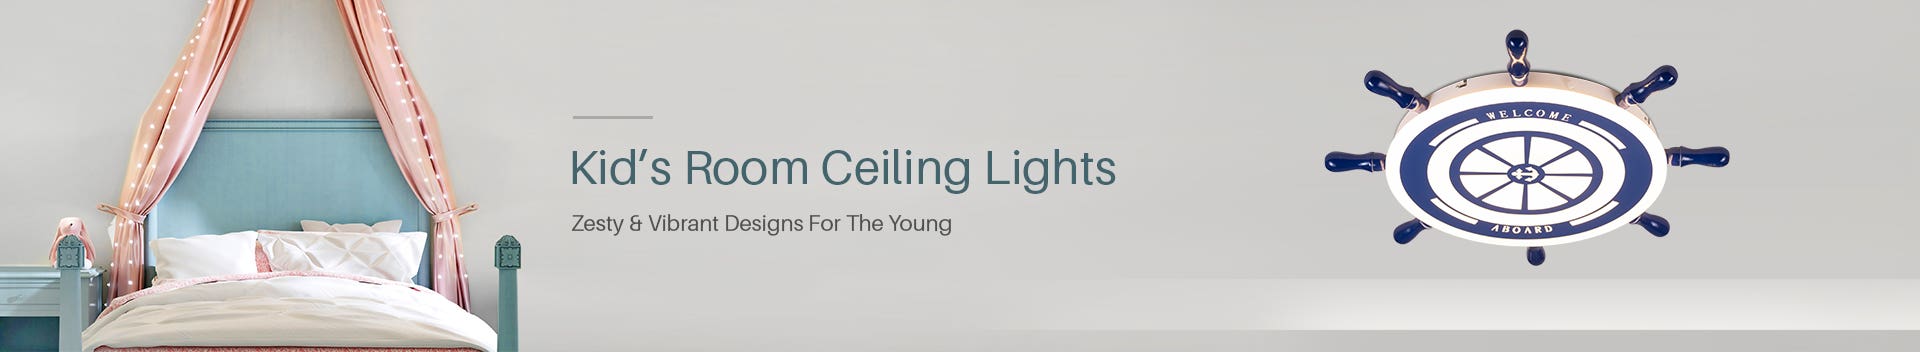 Kid's Room Ceiling Lights